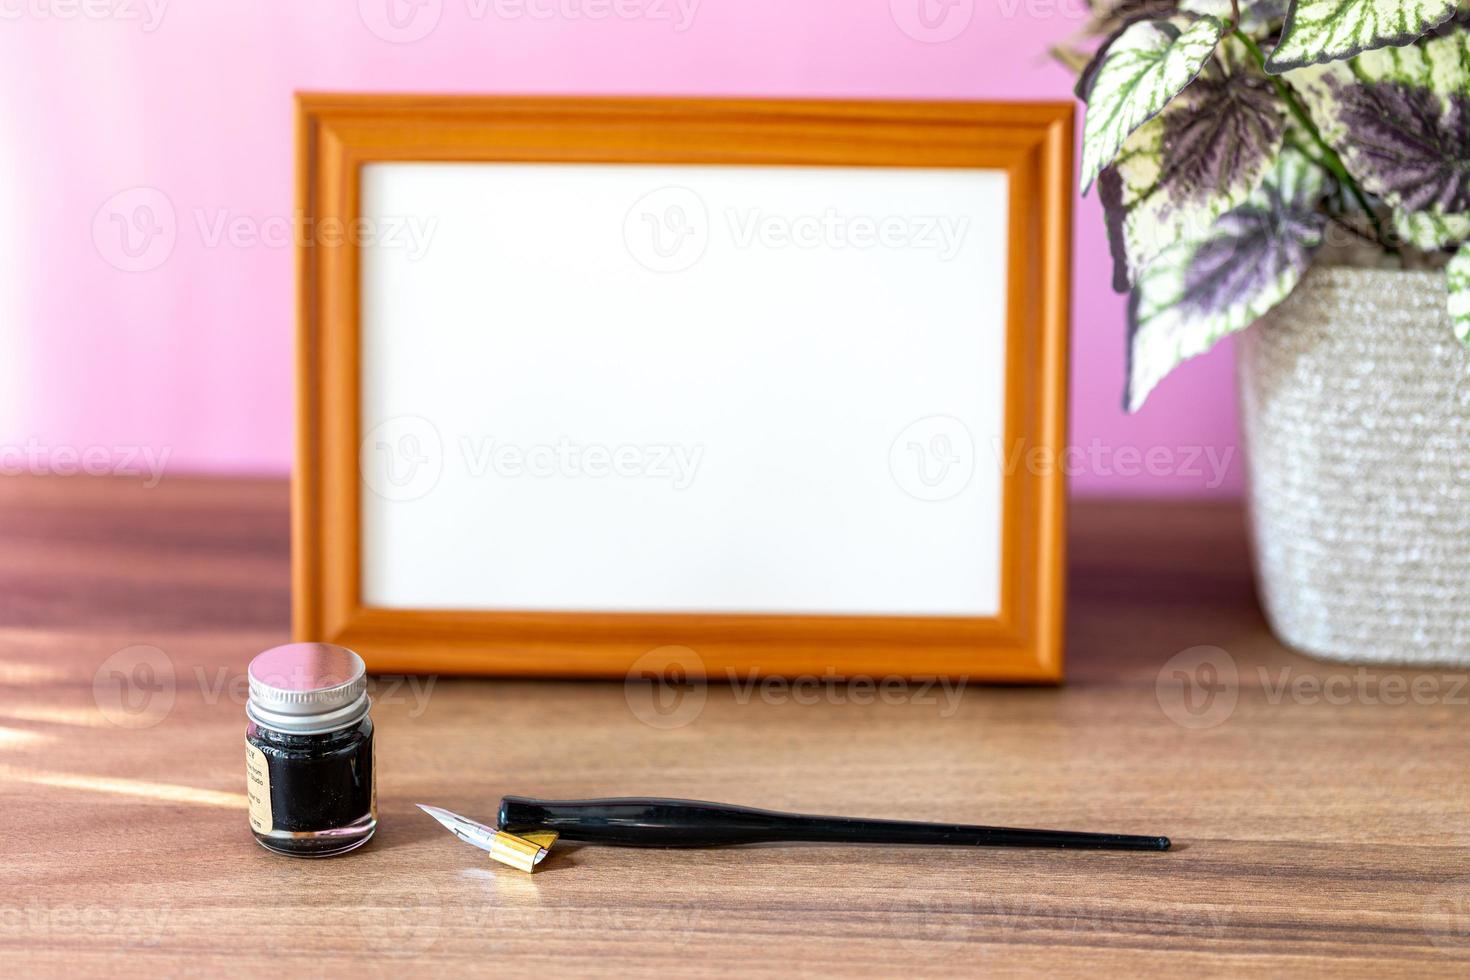 cadre en bois de paysage vierge à côté d'une petite plante d'intérieur et d'outils de calligraphie, maquette d'affichage de peinture ou d'œuvres d'art devant un mur rose photo